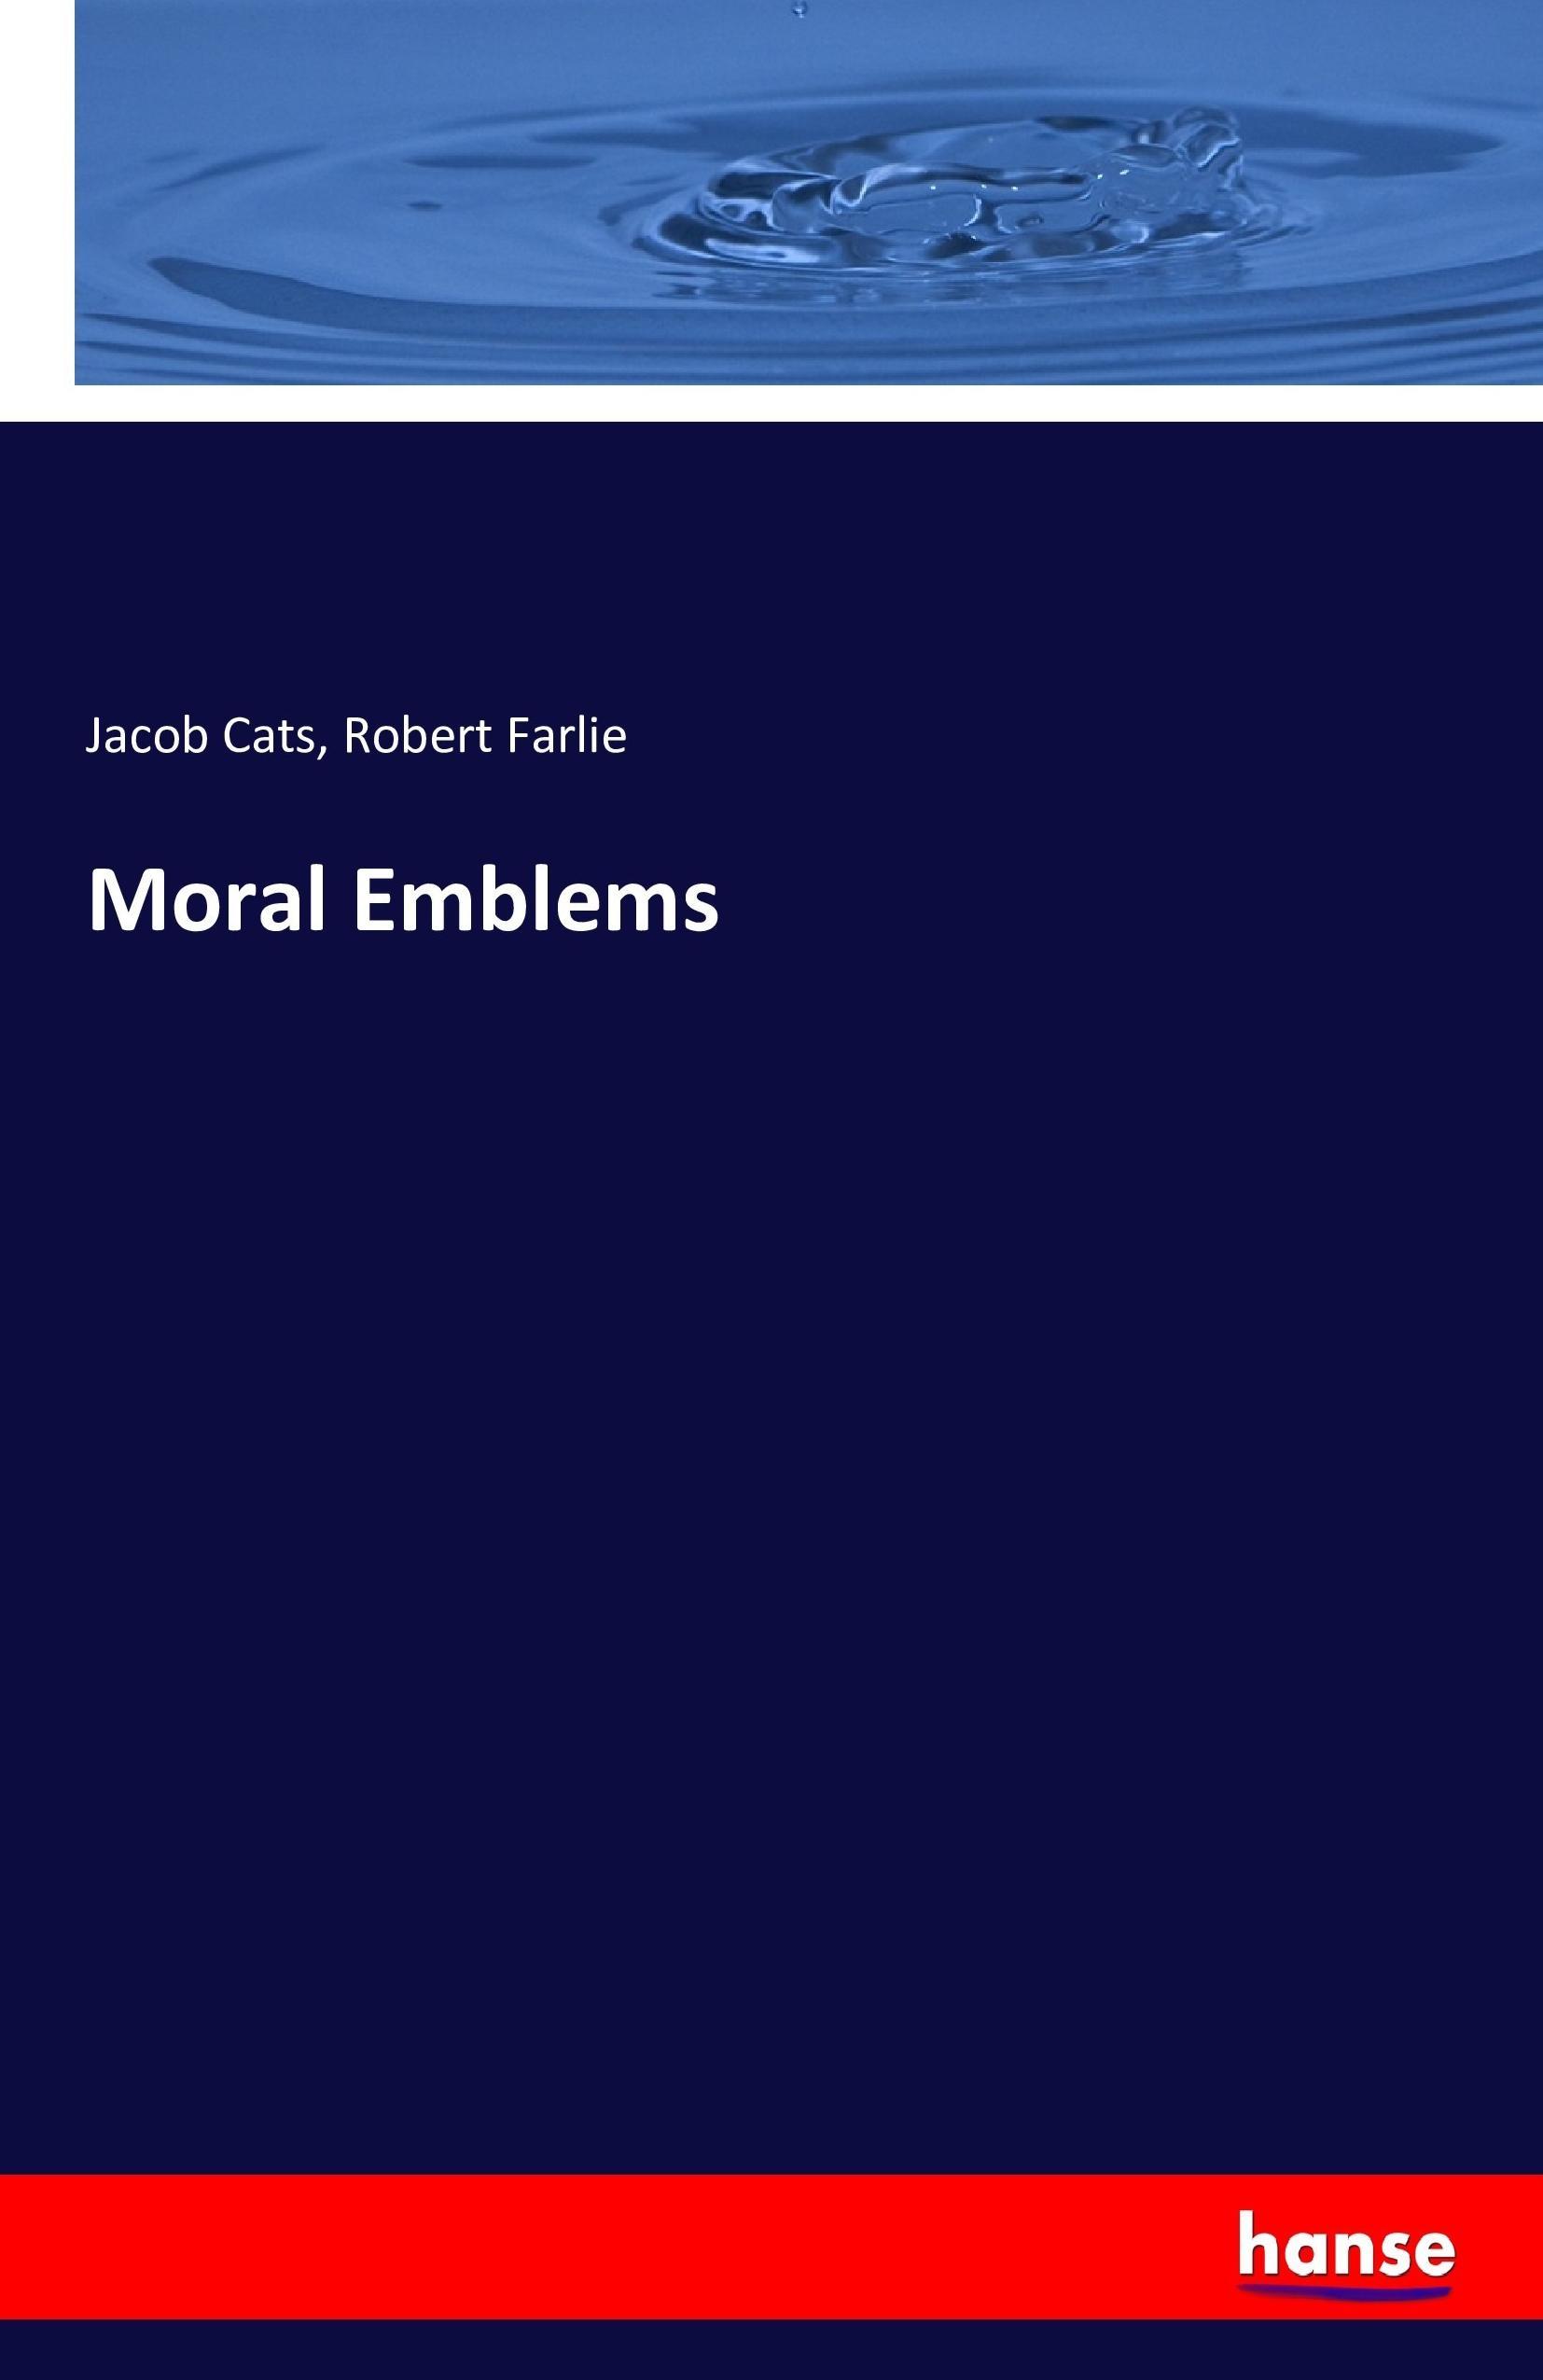 Moral Emblems - Cats, Jacob Farlie, Robert